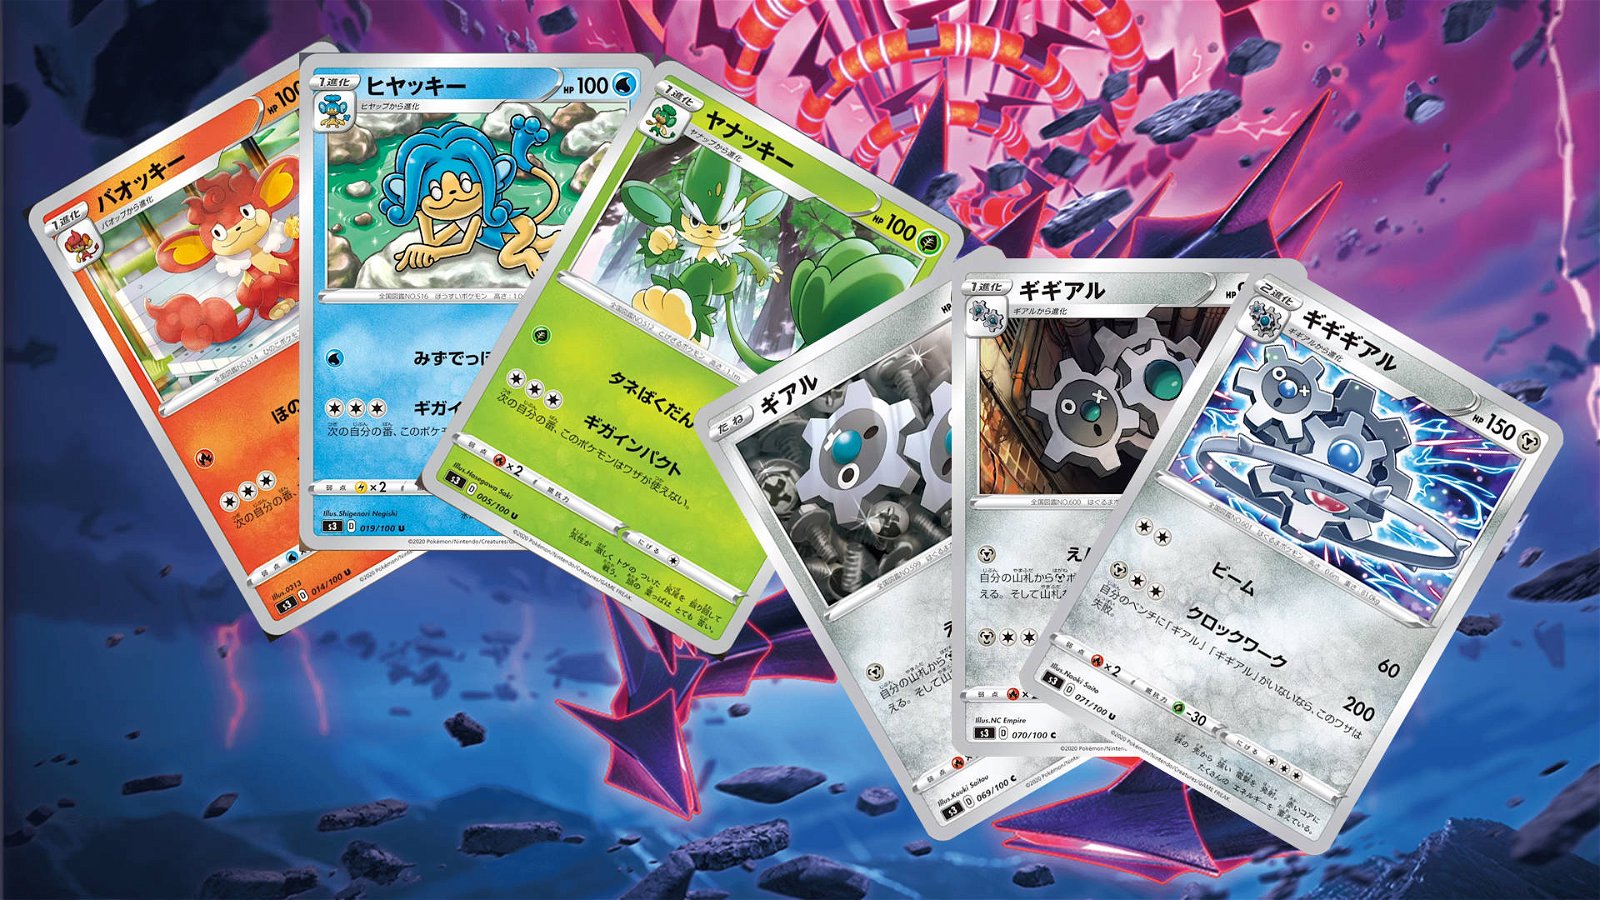 Immagine di Pokémon TCG: ancora nuove carte per l'espansione Infinity Zone